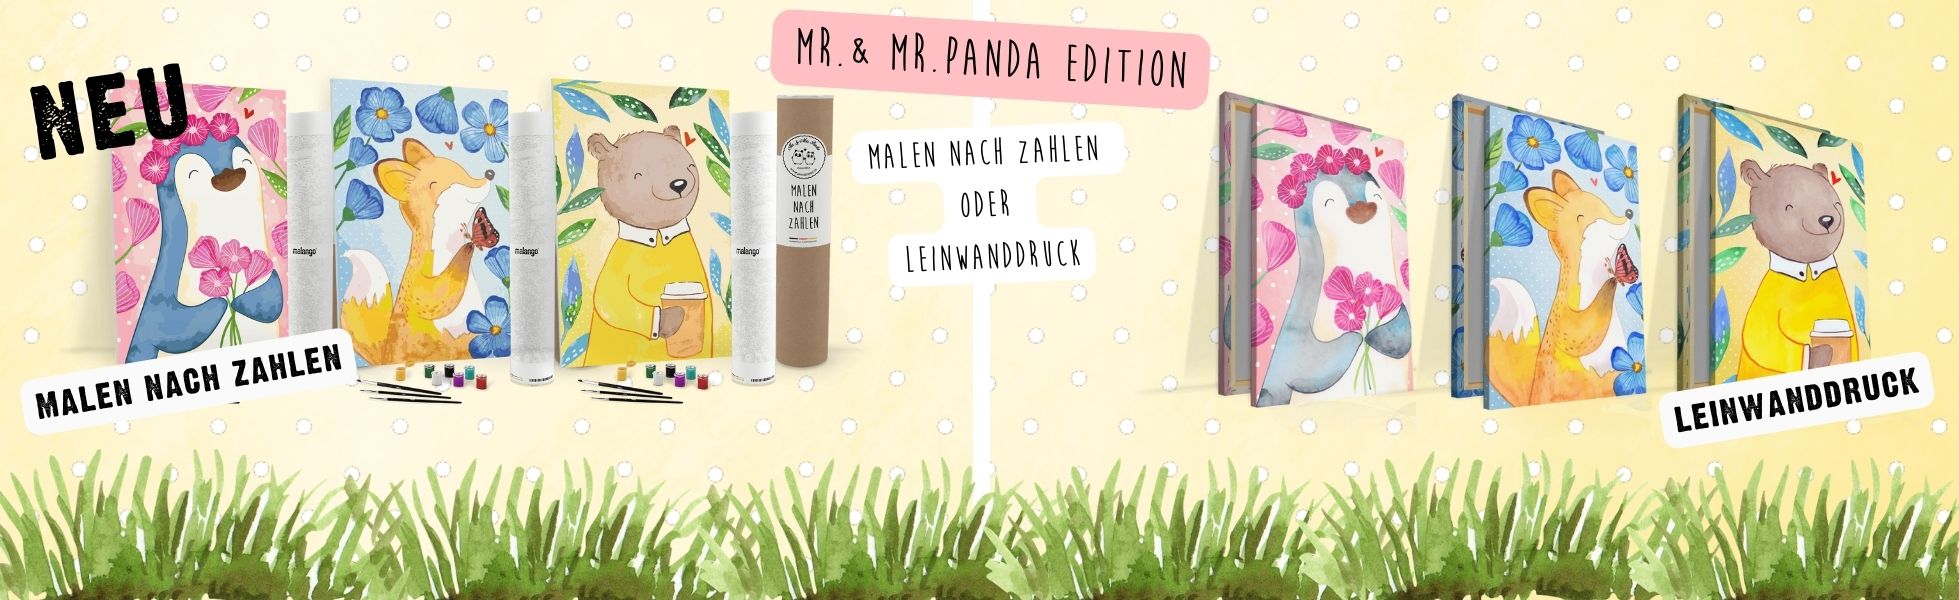 Premium_Edition_-_Mr._Mrs_Panda_Malen_nach_Zahlen_und_Leinwanddruck